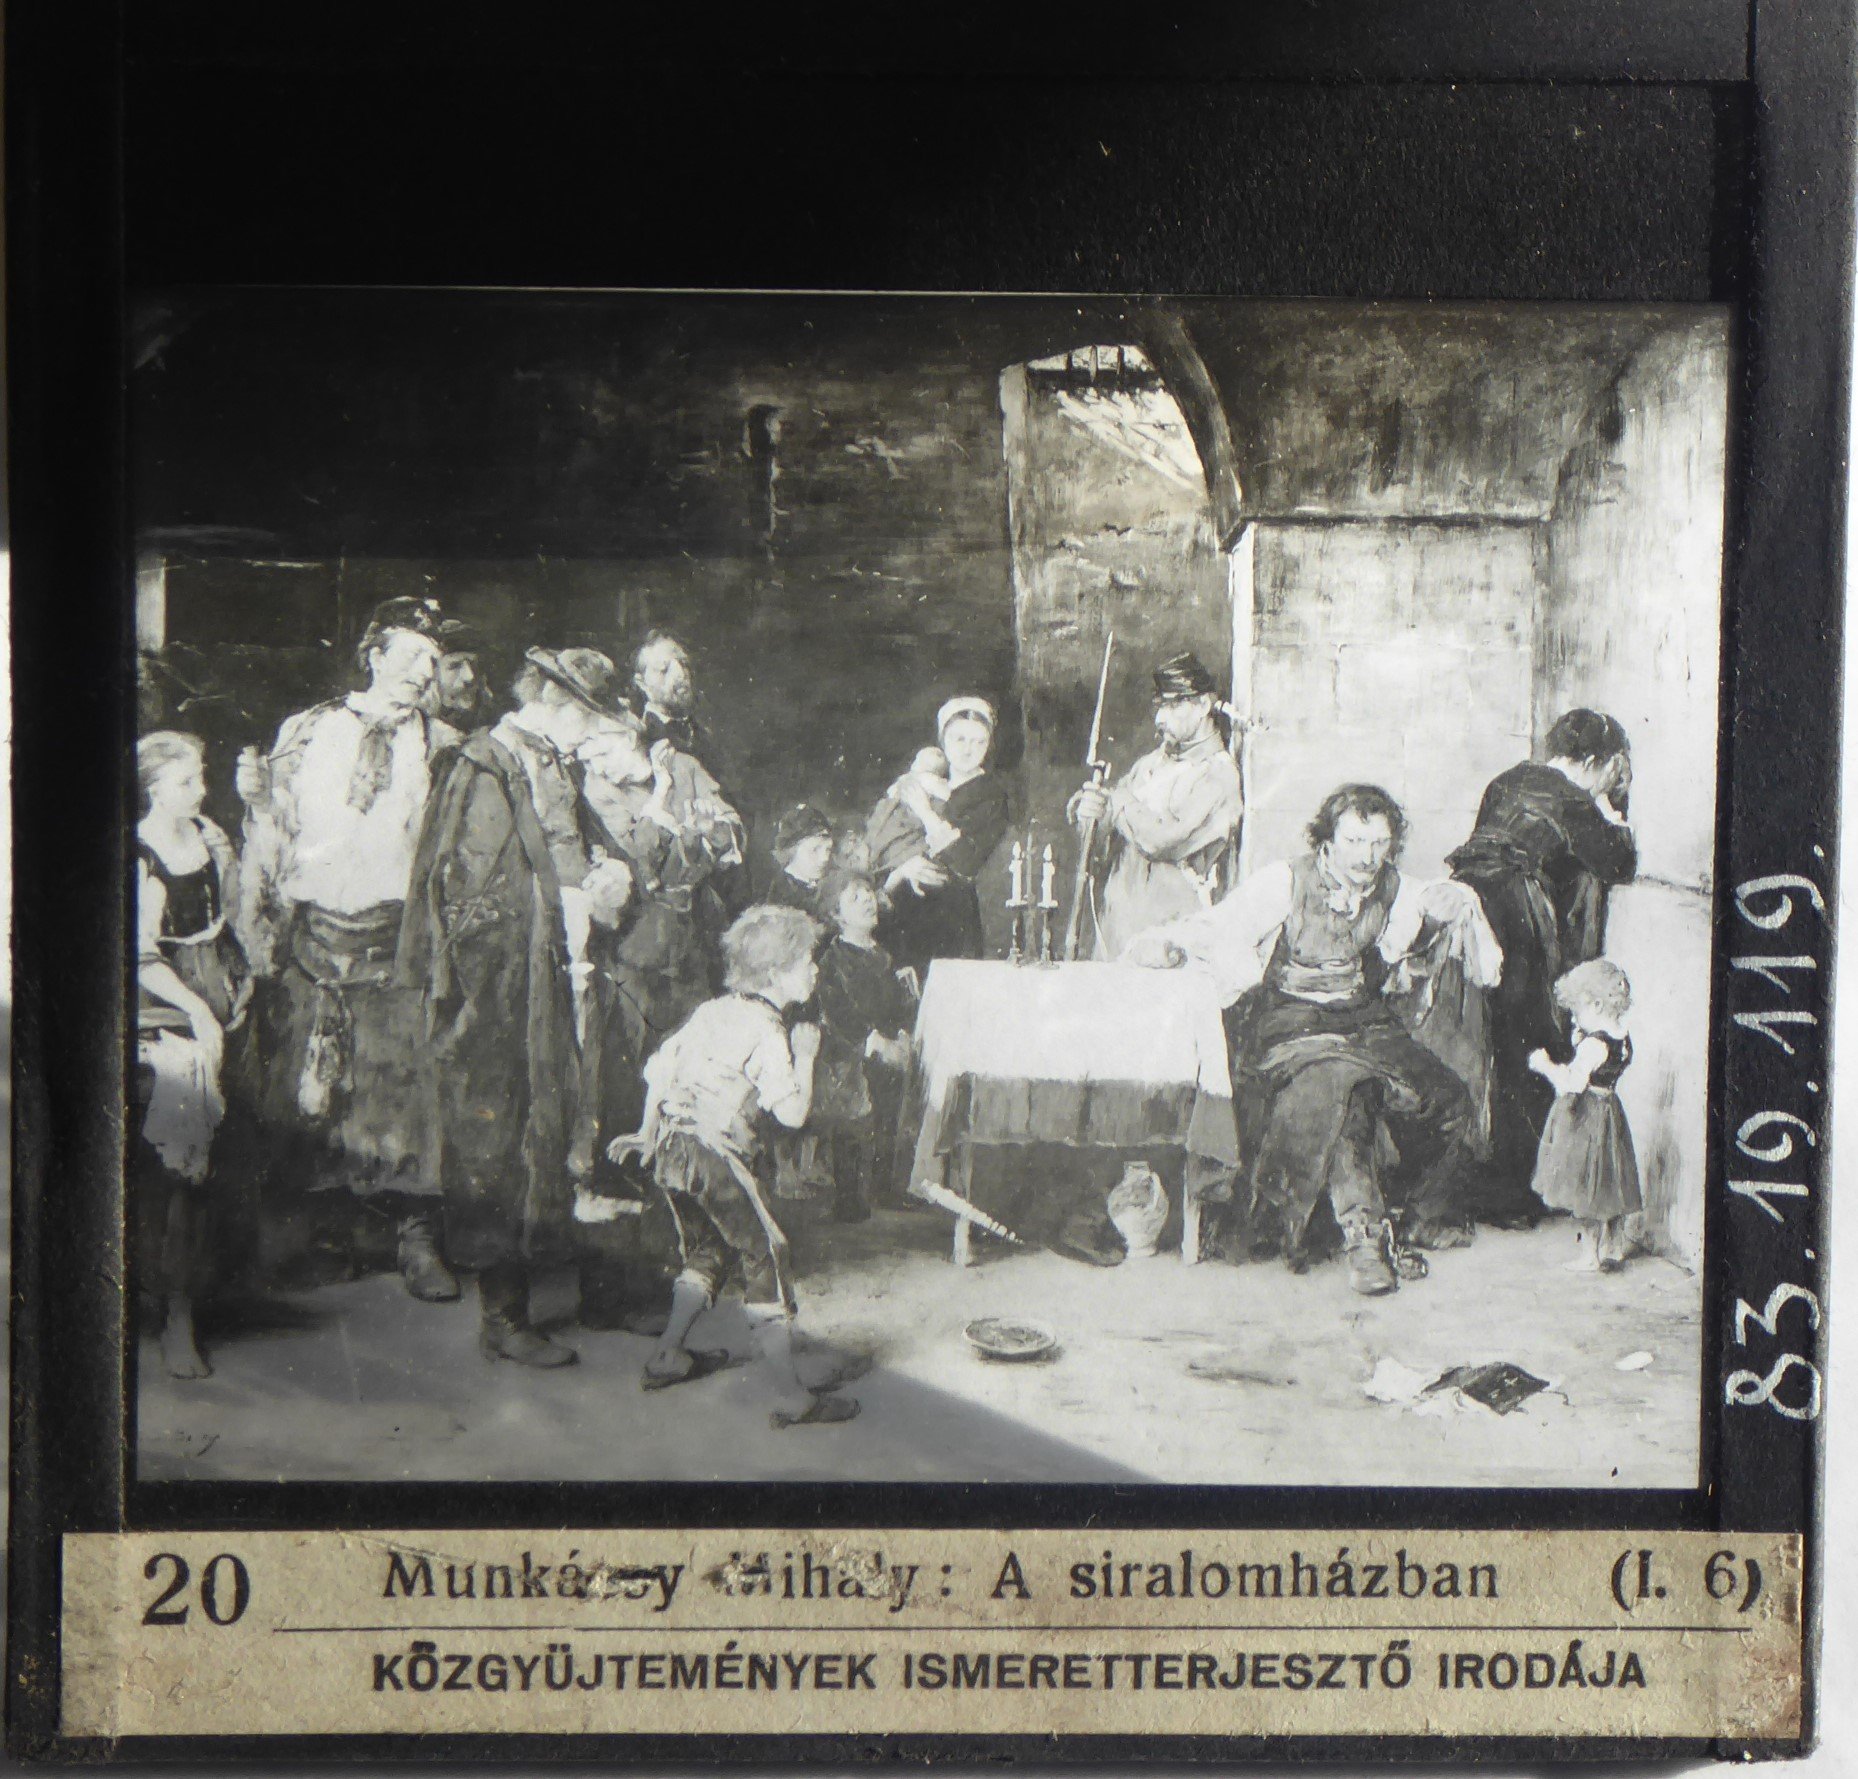 Munkácsy Siralomház című festményét ábrázoló üvegdia (Tapolcai Városi Múzeum CC BY-NC-SA)